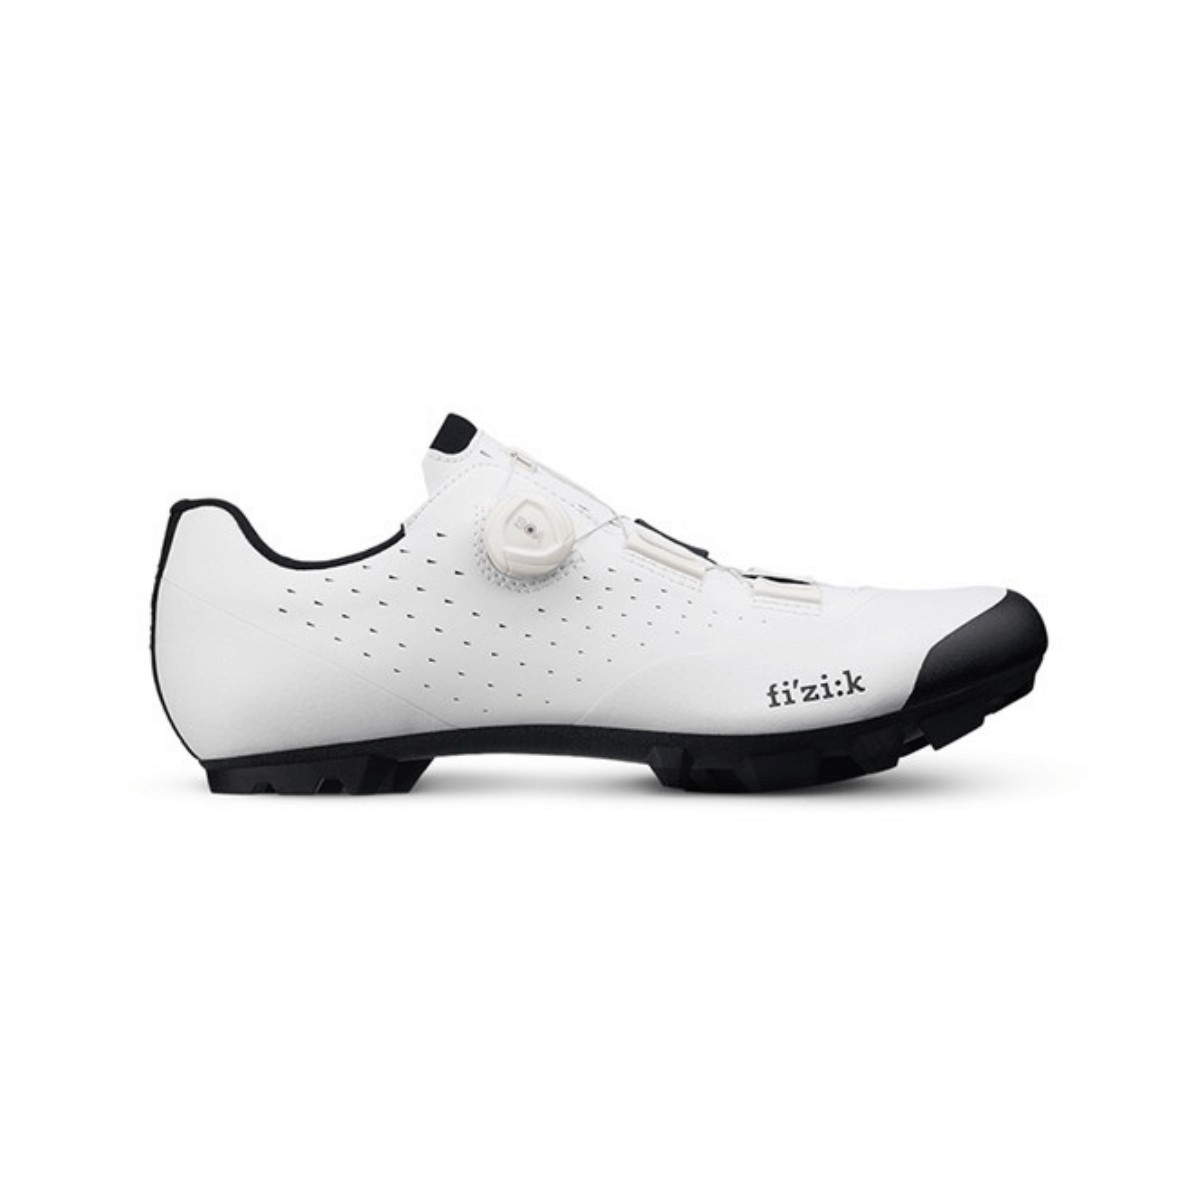 Shoes Fizik Vento Overcurve X3 White Black, Size 41 - EUR